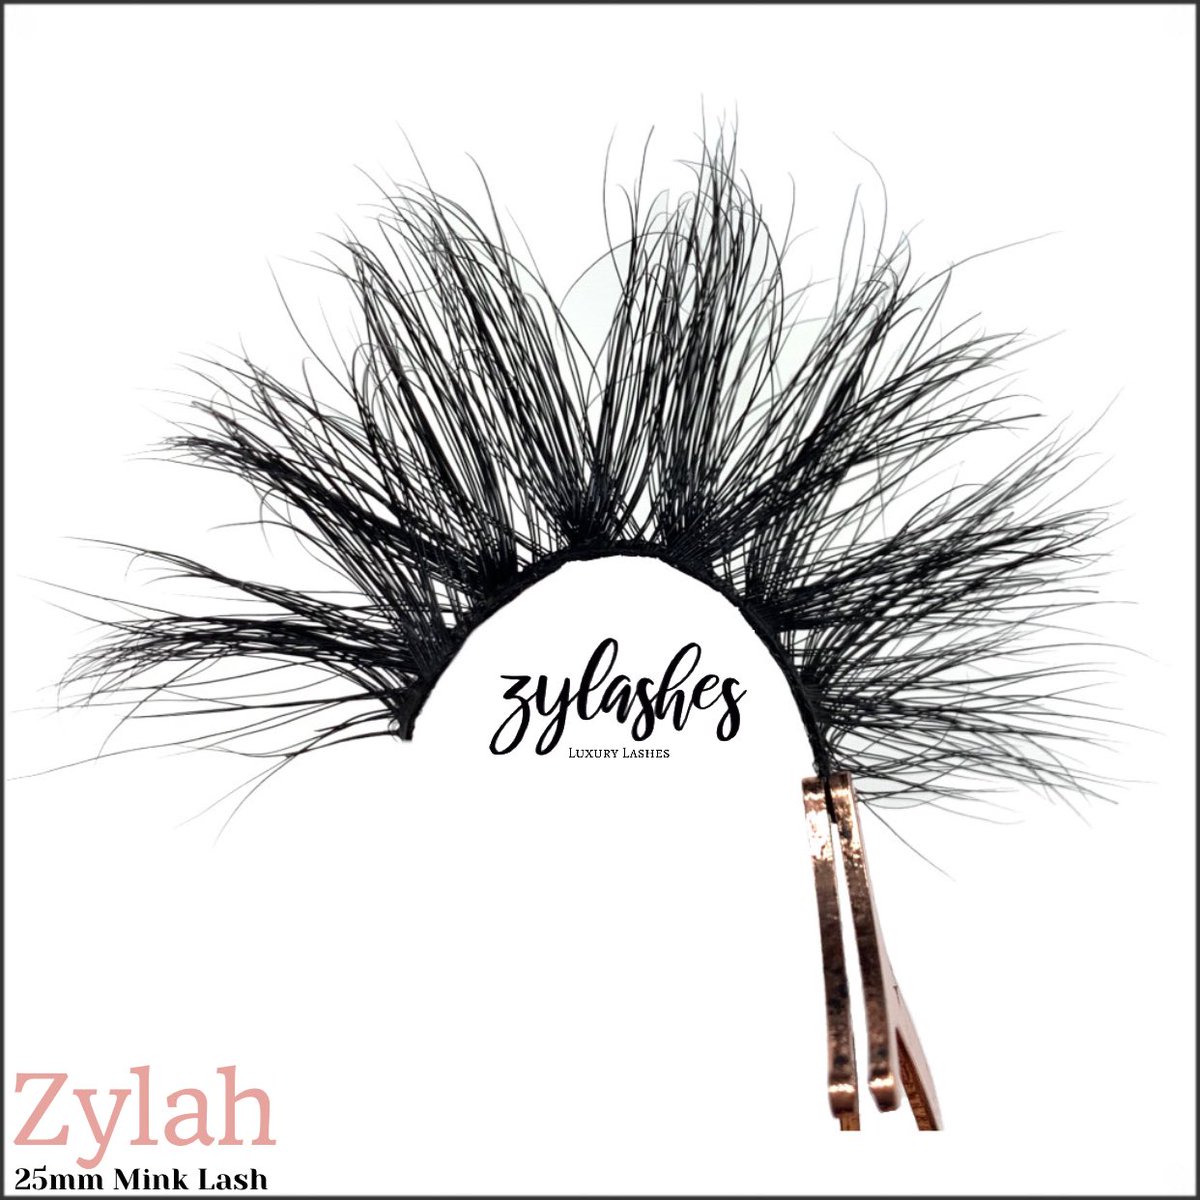 ‘Zylah’ back in stock !!
•
ZYLASHES.COM 💕
————————————————————
#zylashes_ #GodIsWithMe #luxurylashes #minklashes #25mmlashes #zylah #mua #blackownedbusiness #3dlashes #lashes #mink #smallbusinessowners #minkstriplashes #striplashes #lashlove #minkeyelashes #eyelashes